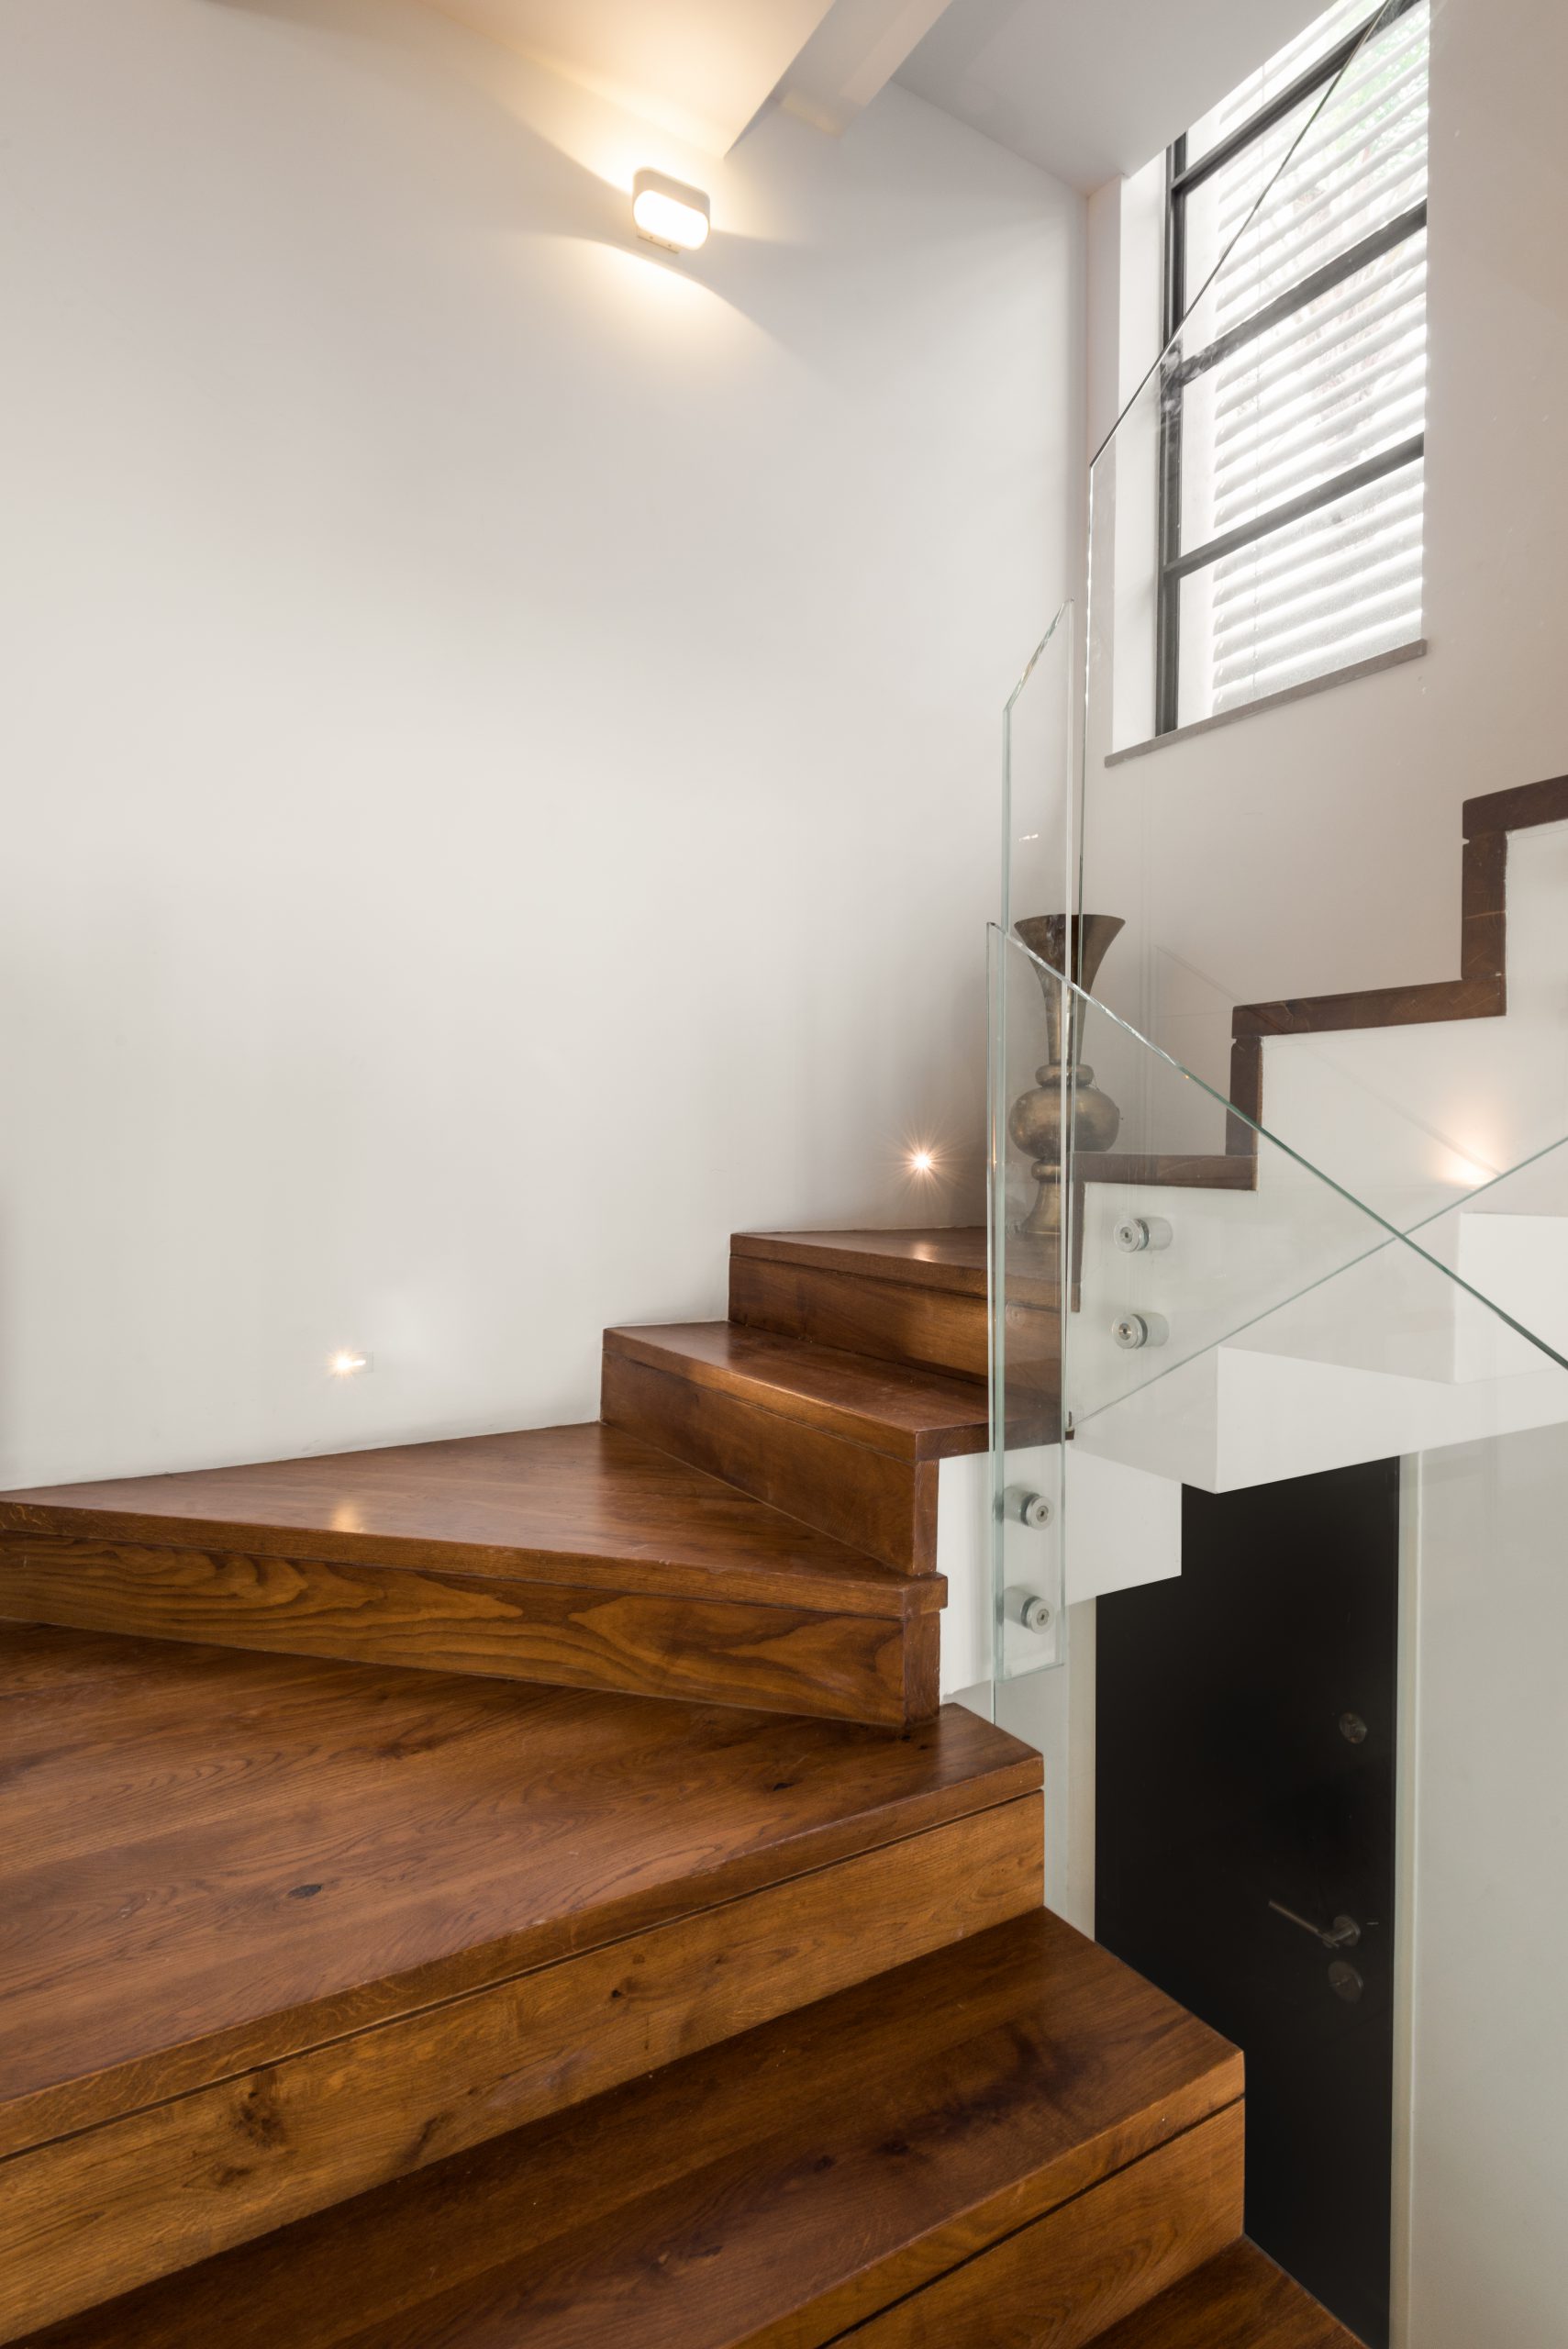 כיצד לבחור תאורה נכונה לחדרי מדרגות בבית?